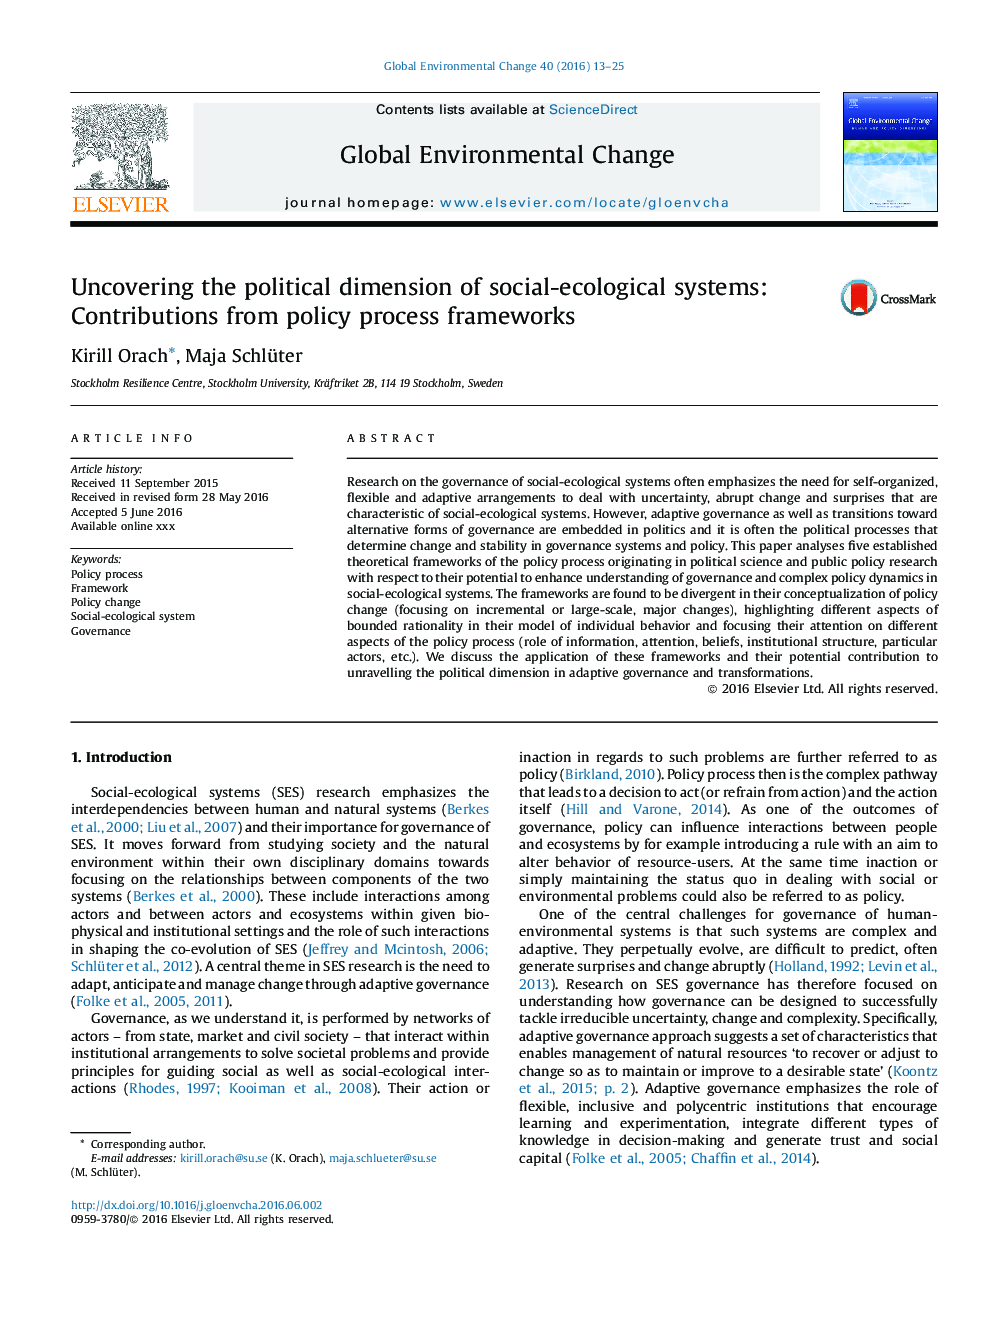 کشف ابعاد سیاسی سیستم های اجتماعی-اکولوژیک: مشارکت از چارچوب های فرایند سیاست 